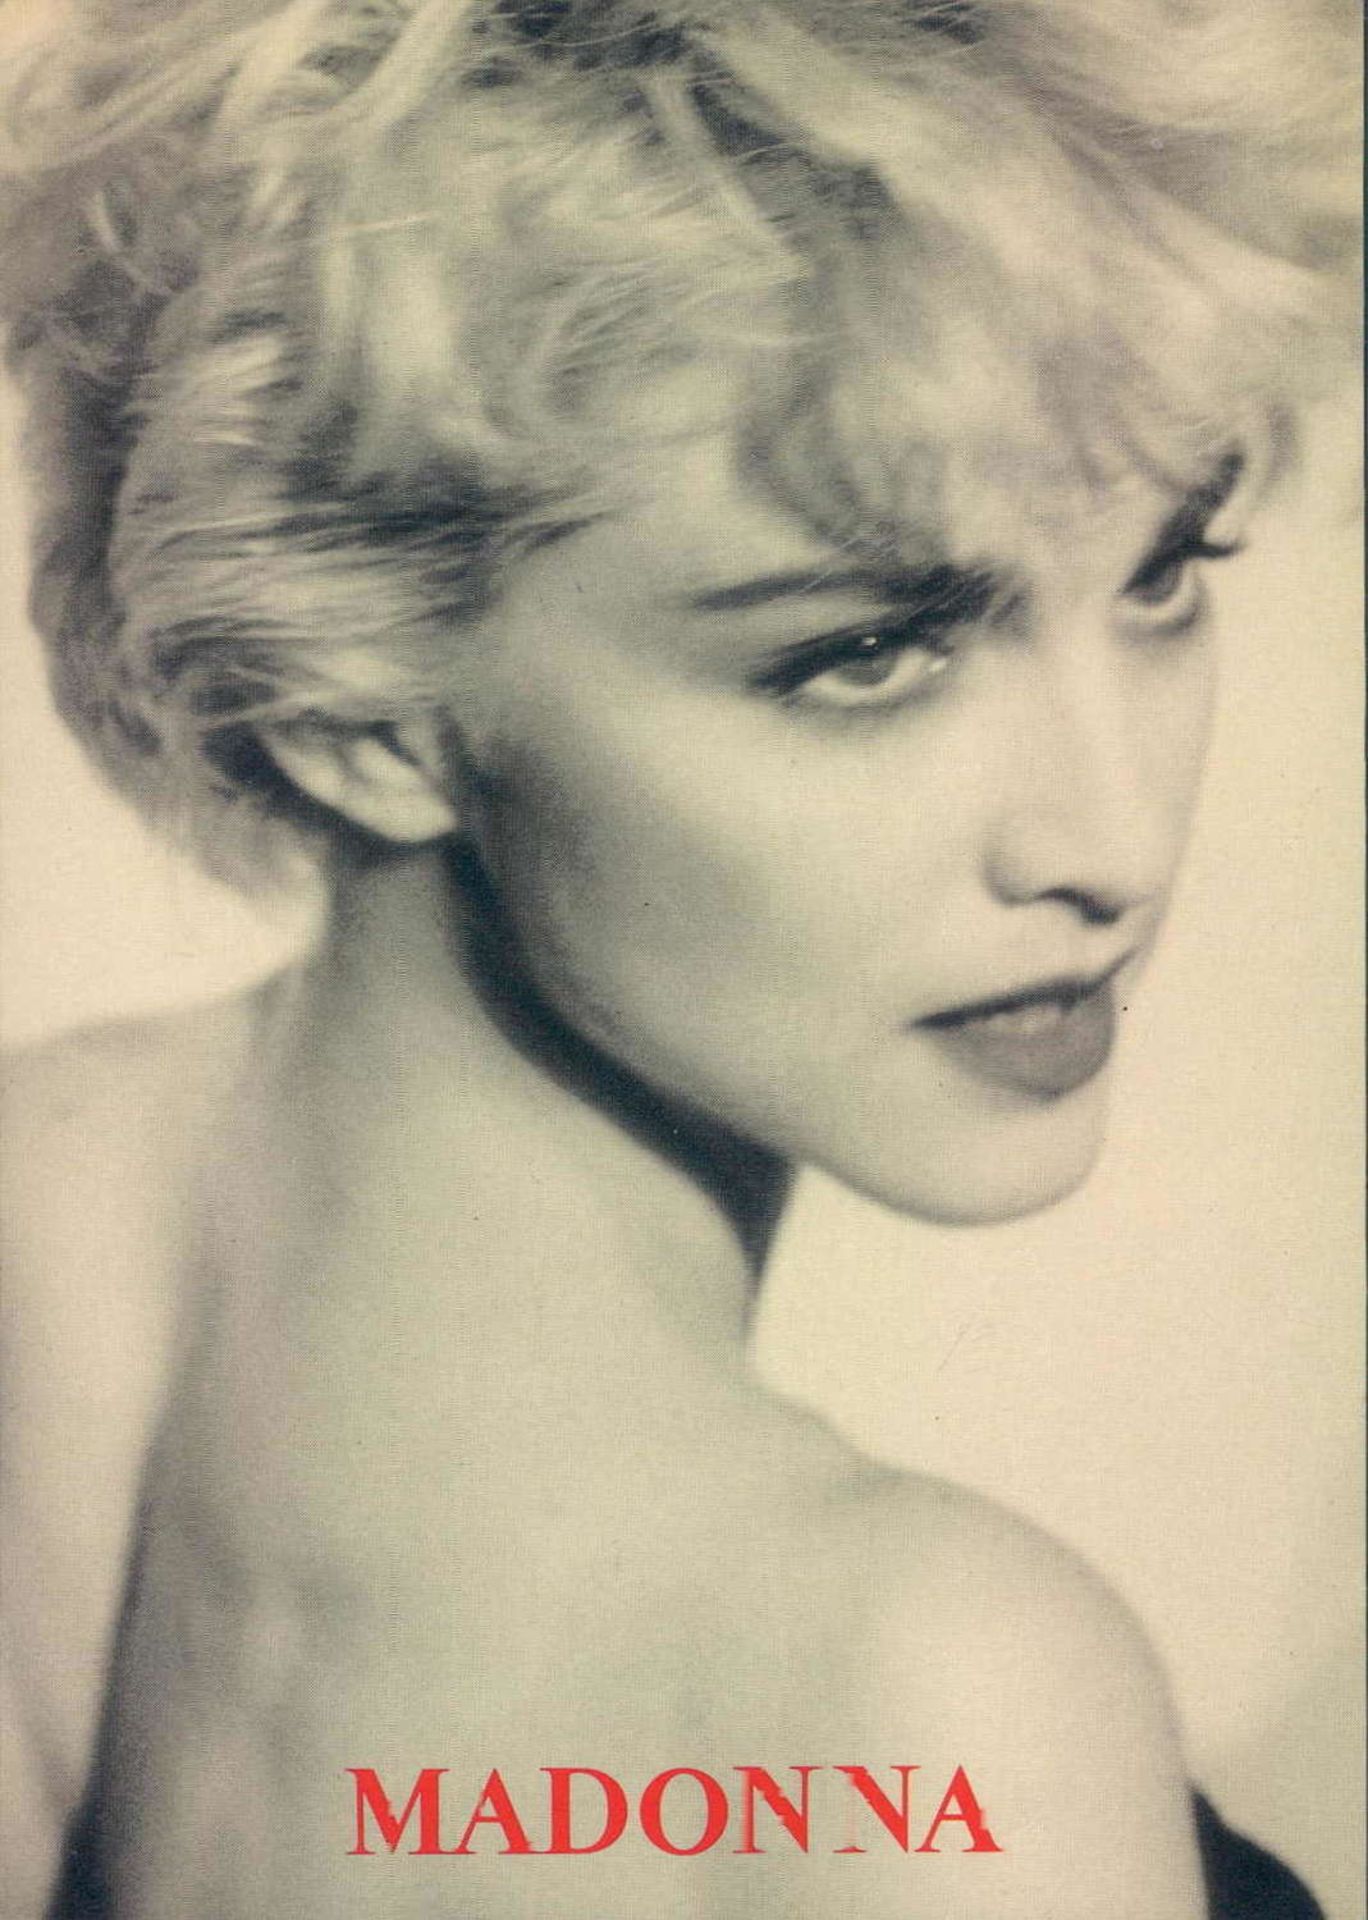 25 Star - Postkarten von Madonna. Alle verschiedene Motive.25 Star - Postcards by Madonna. All - Image 5 of 5